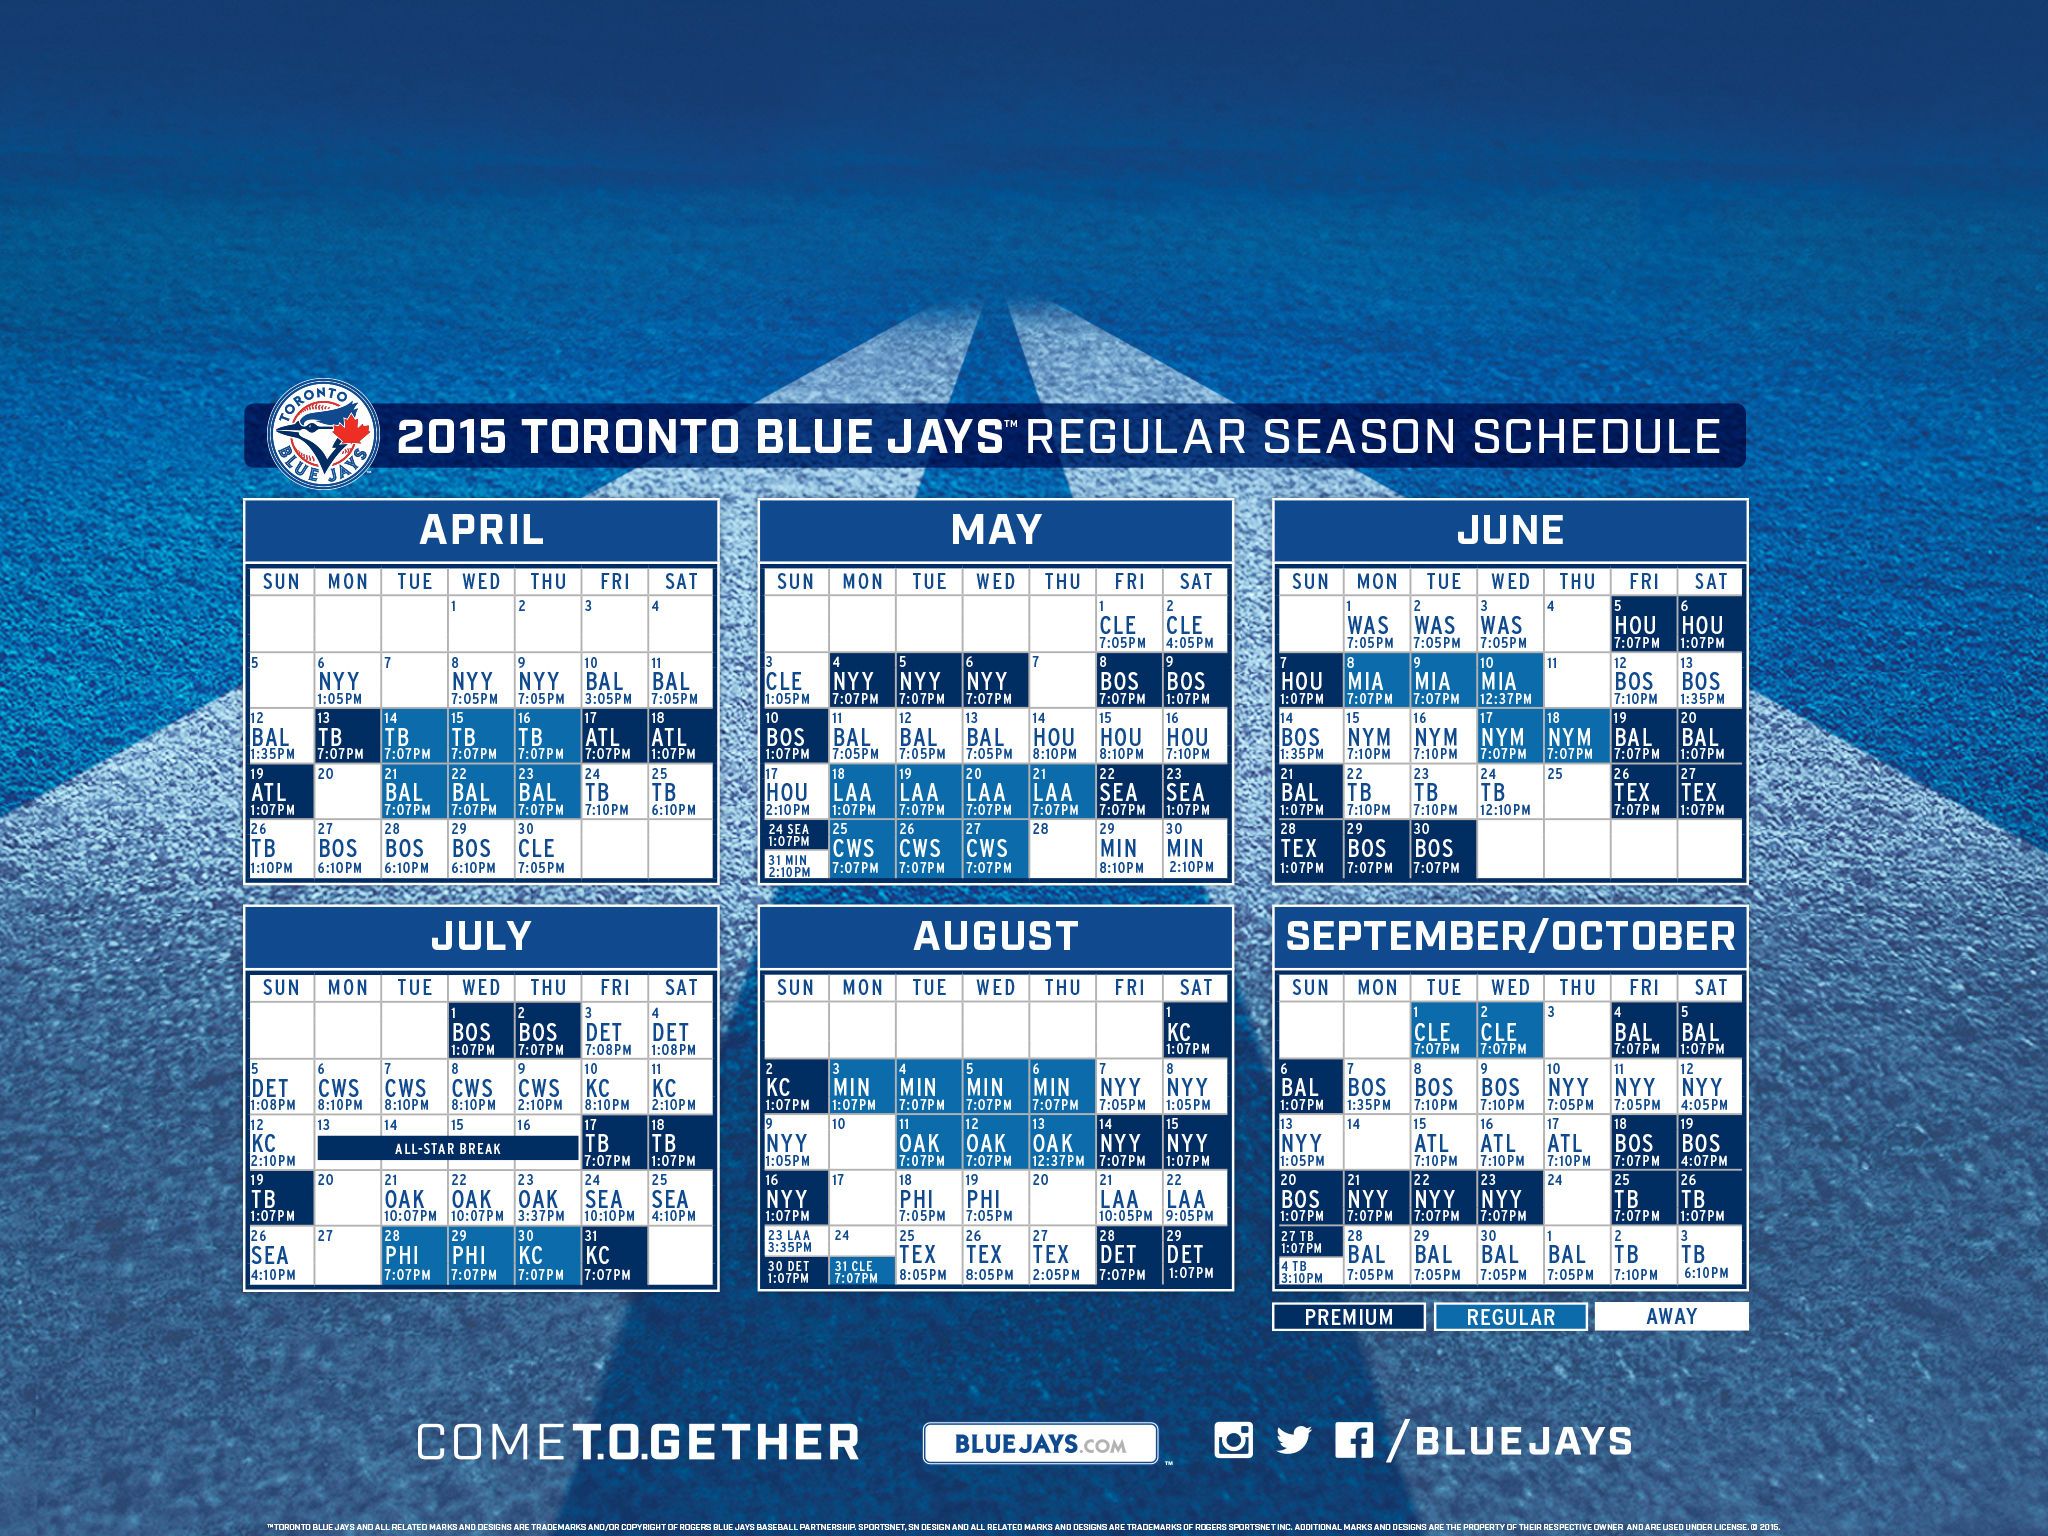 [47+] Dodgers Schedule Wallpaper